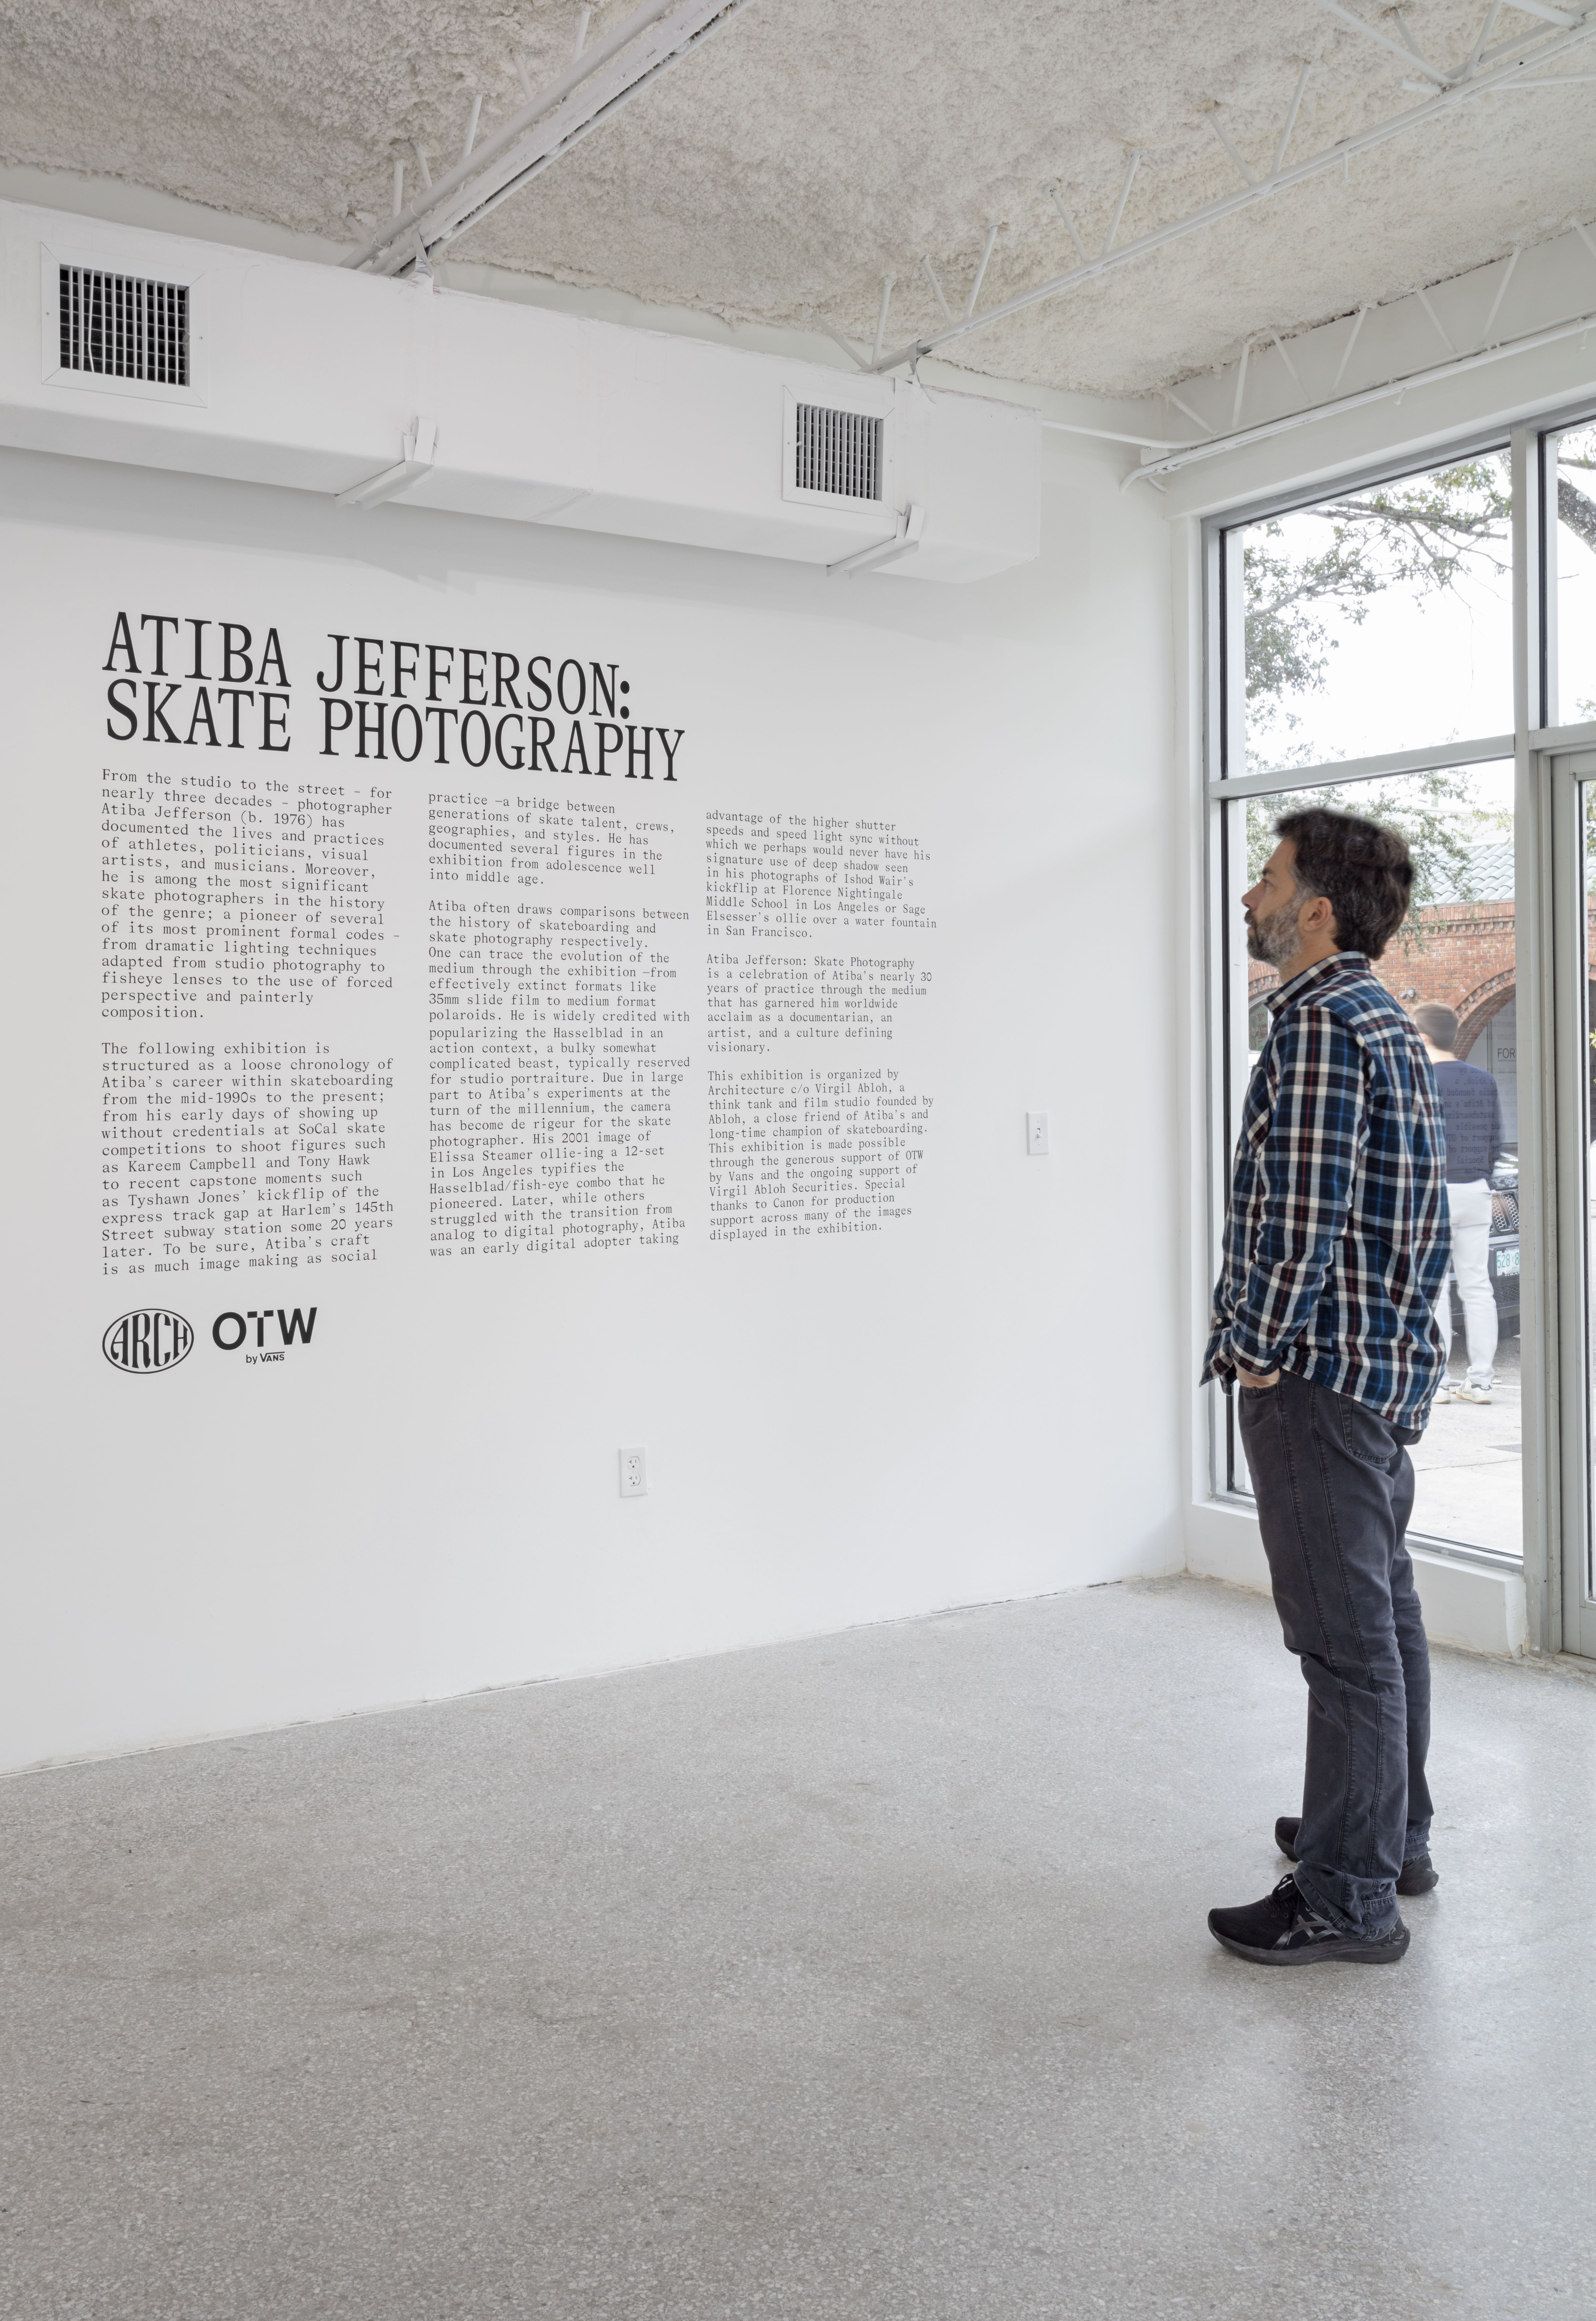 Artist Atiba Jefferson’s at Miami Art Basel celebrating their show